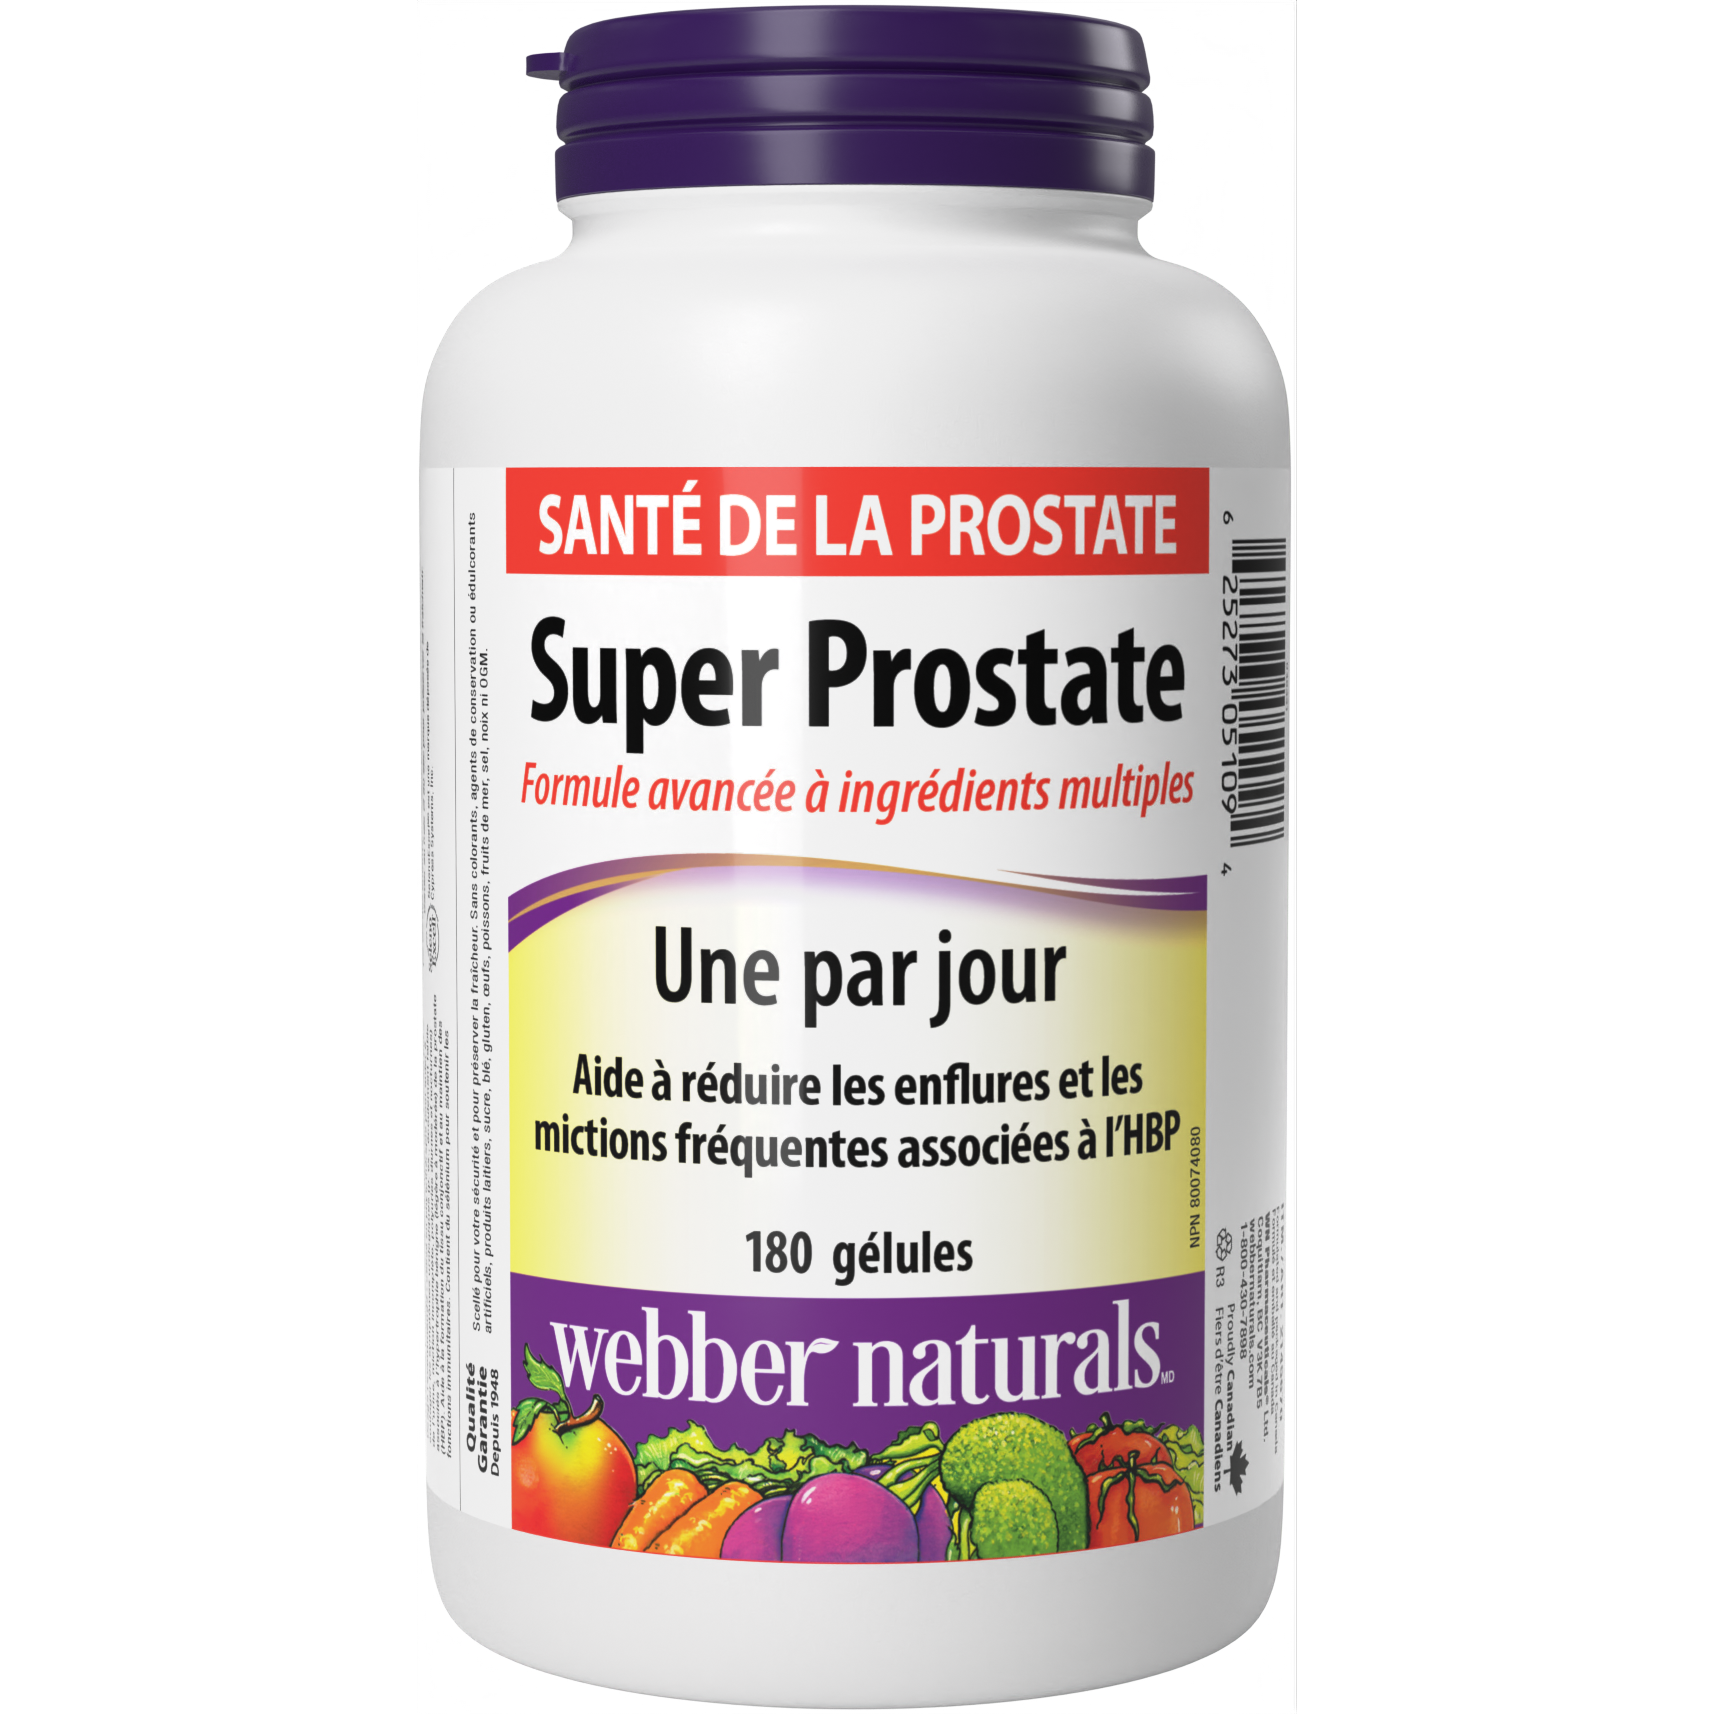 Super Prostate gélules for Webber Naturals|v|hi-res|WN5109